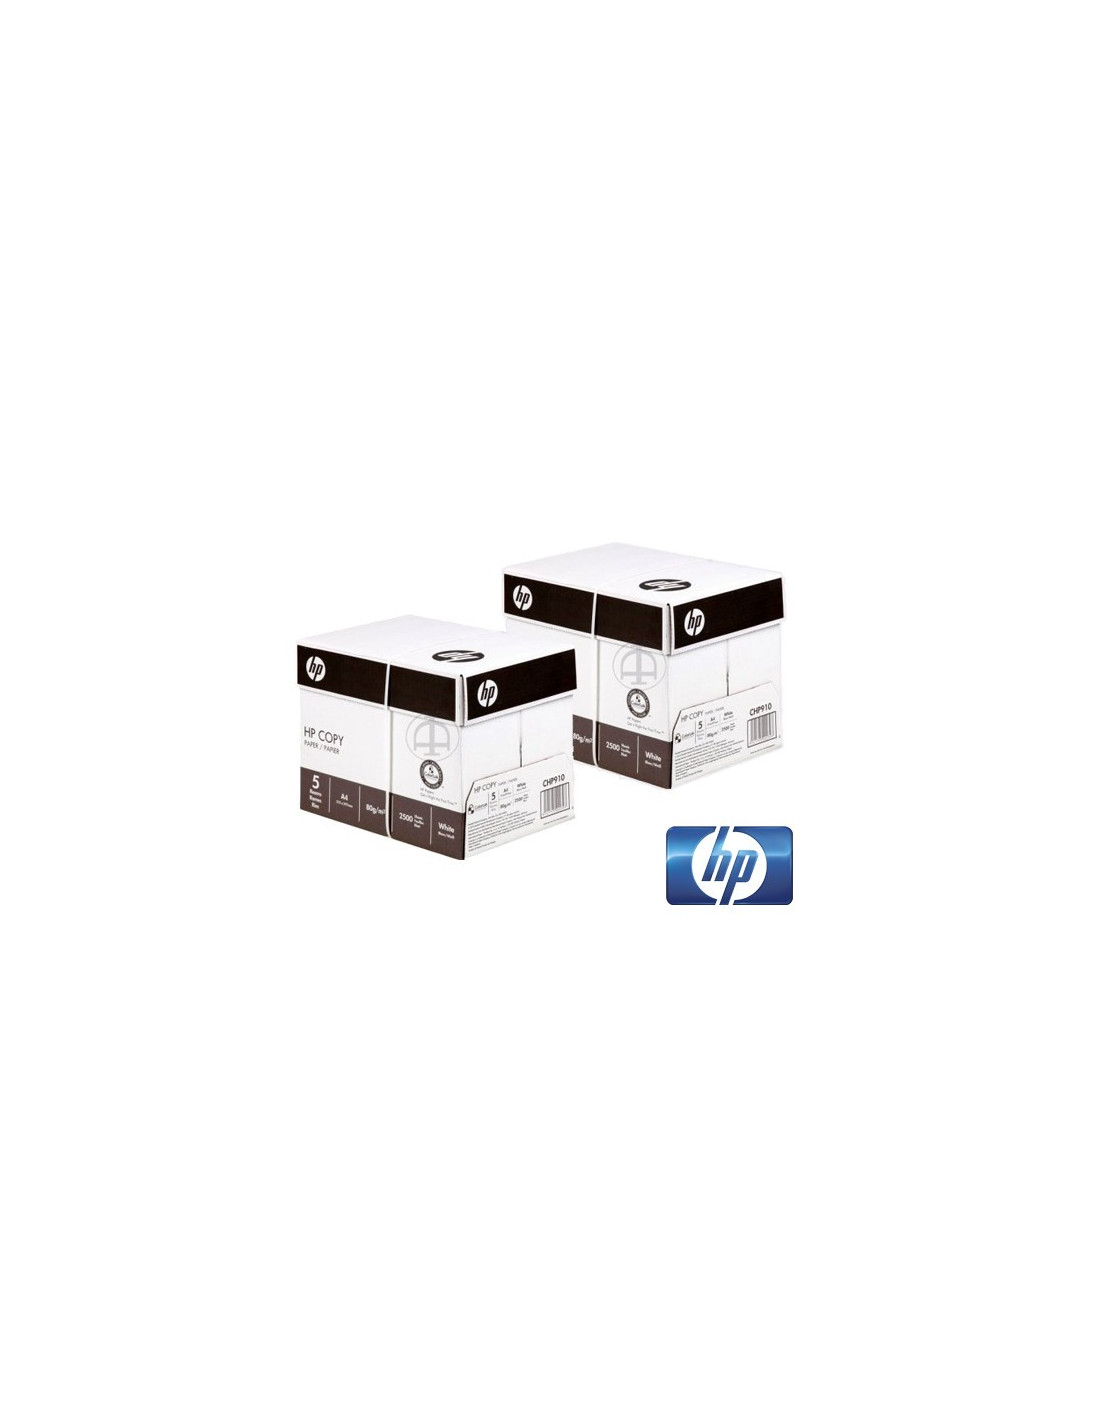 https://www.kit-de-maintenance.fr/3949-thickbox_default/cartons-papier-a4-hp-photocopieur-et-imprimante.jpg